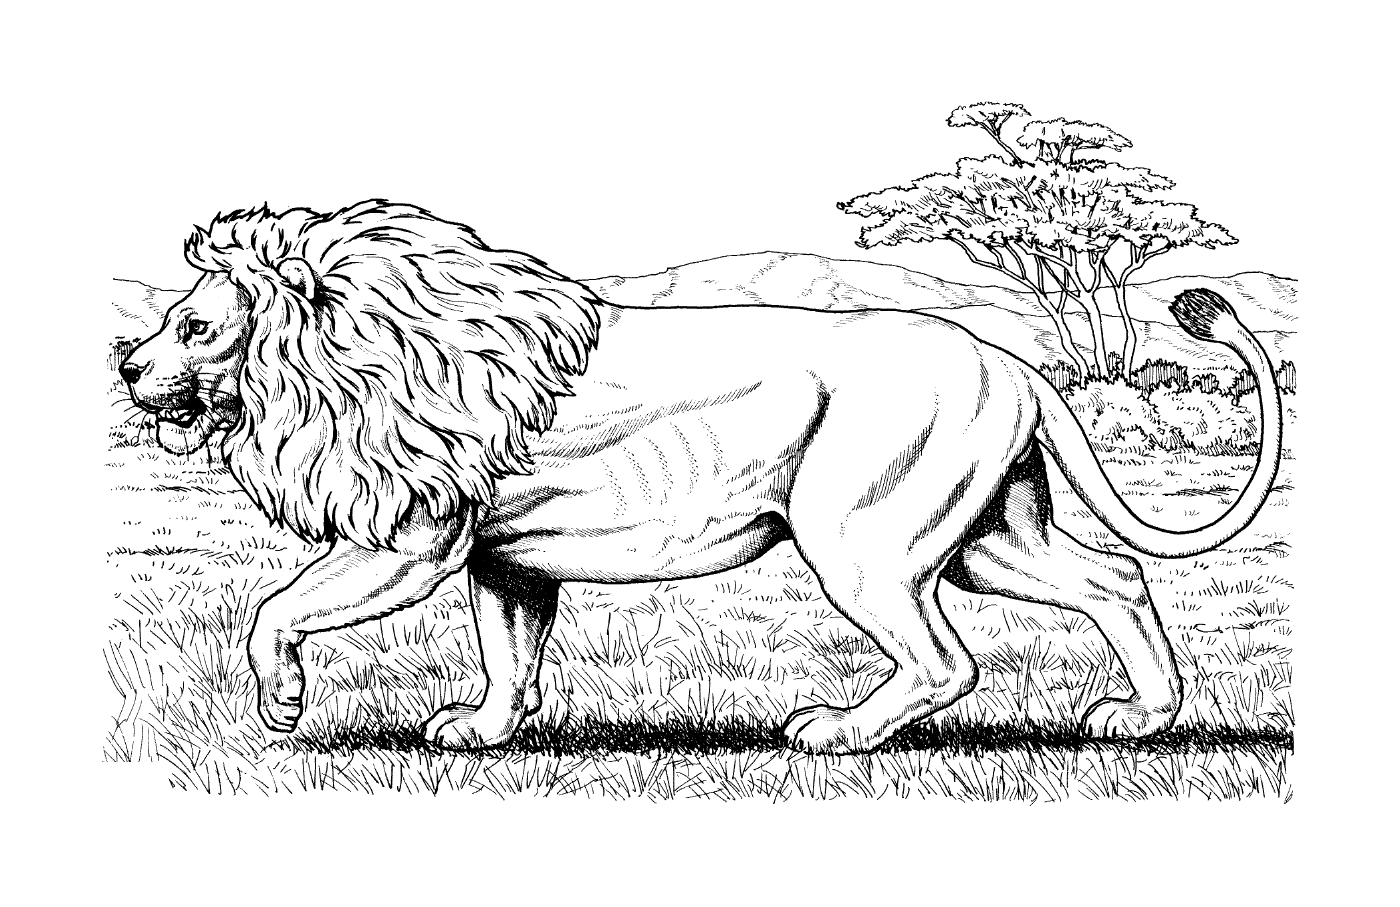  León africano caminando en la hierba 